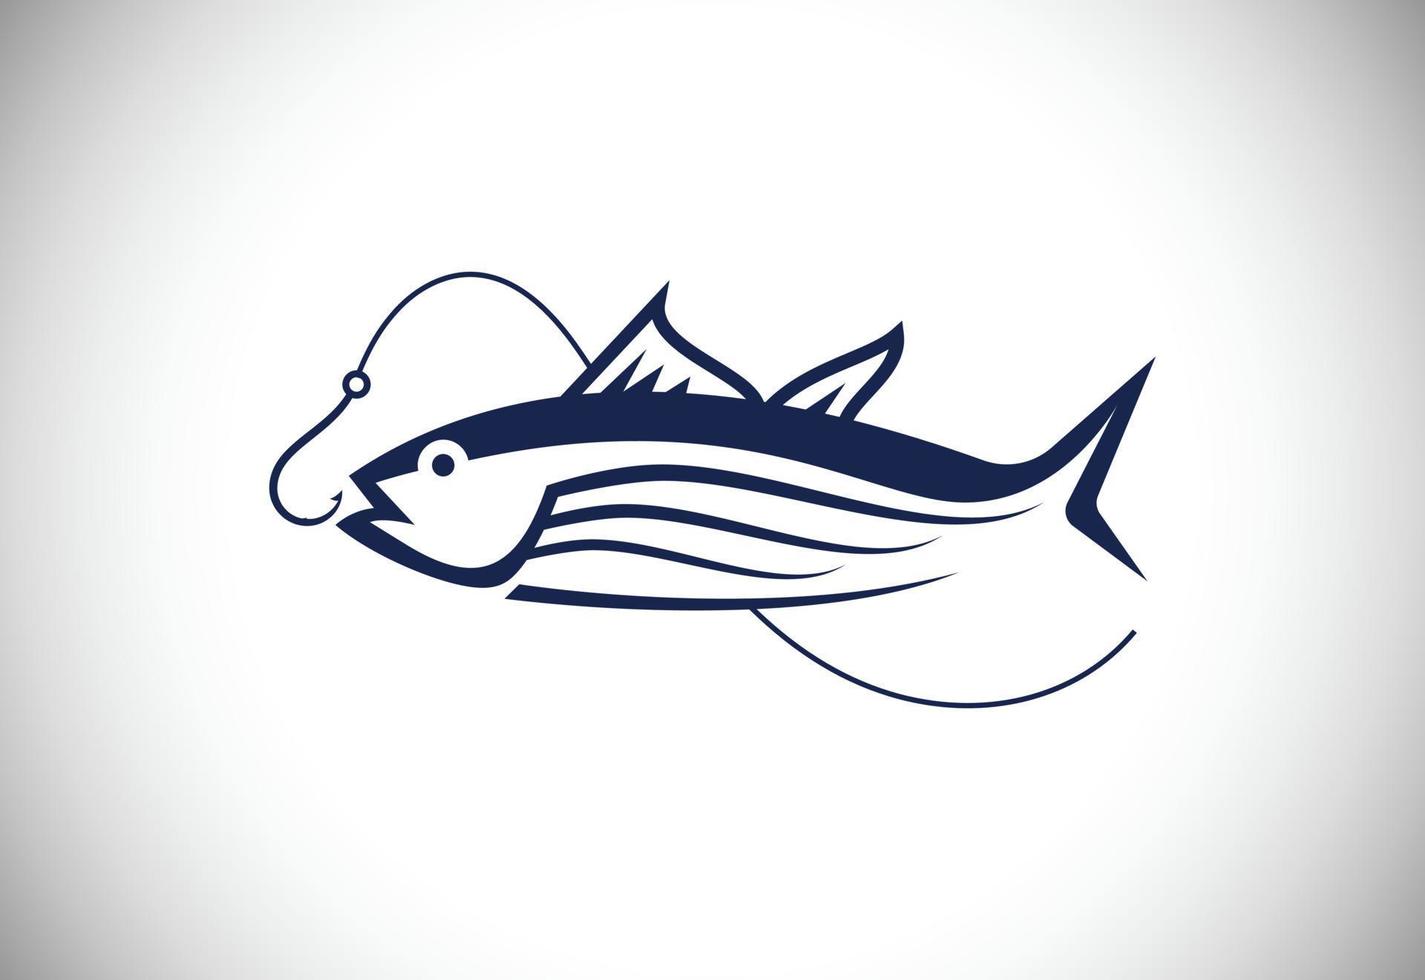 Fishing logo. Fish Logo, Wild Fish Logo, Fly Fishing Logo, Fishing Hook ...